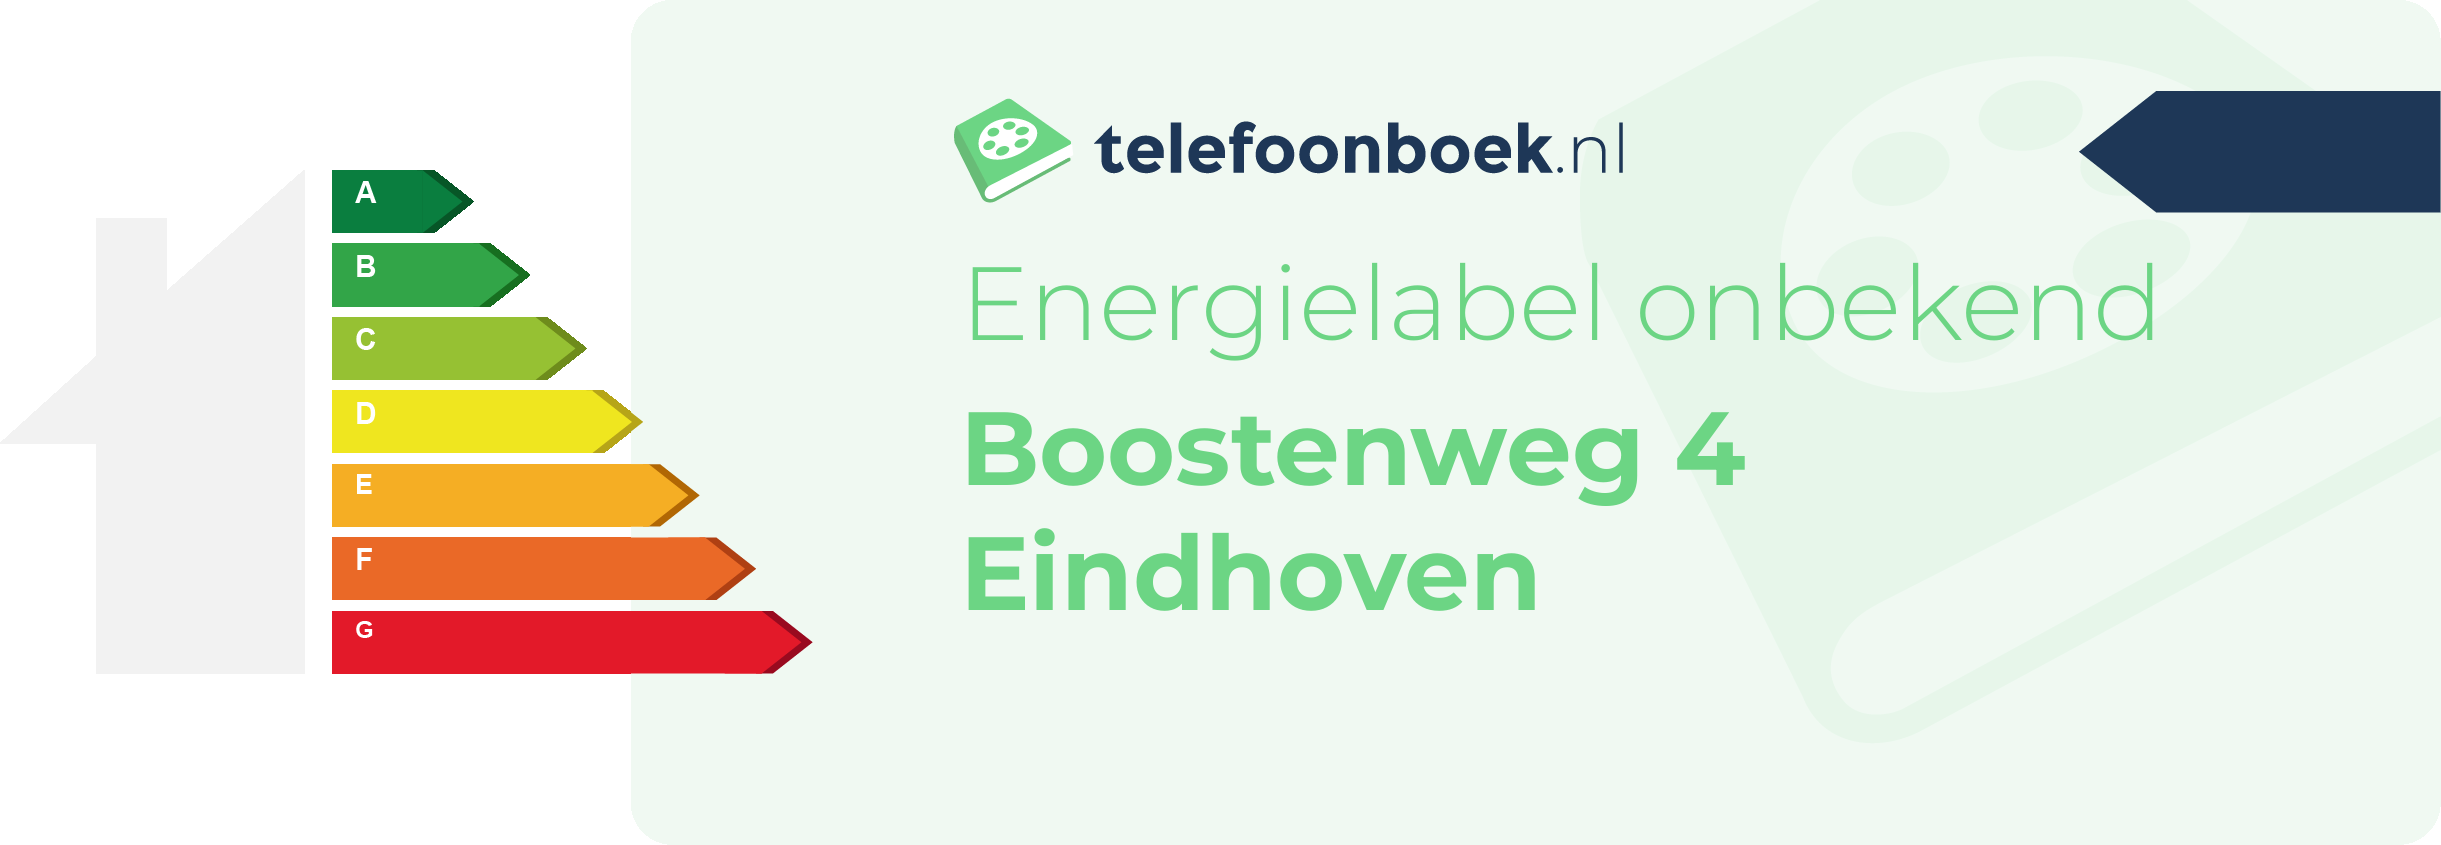 Energielabel Boostenweg 4 Eindhoven